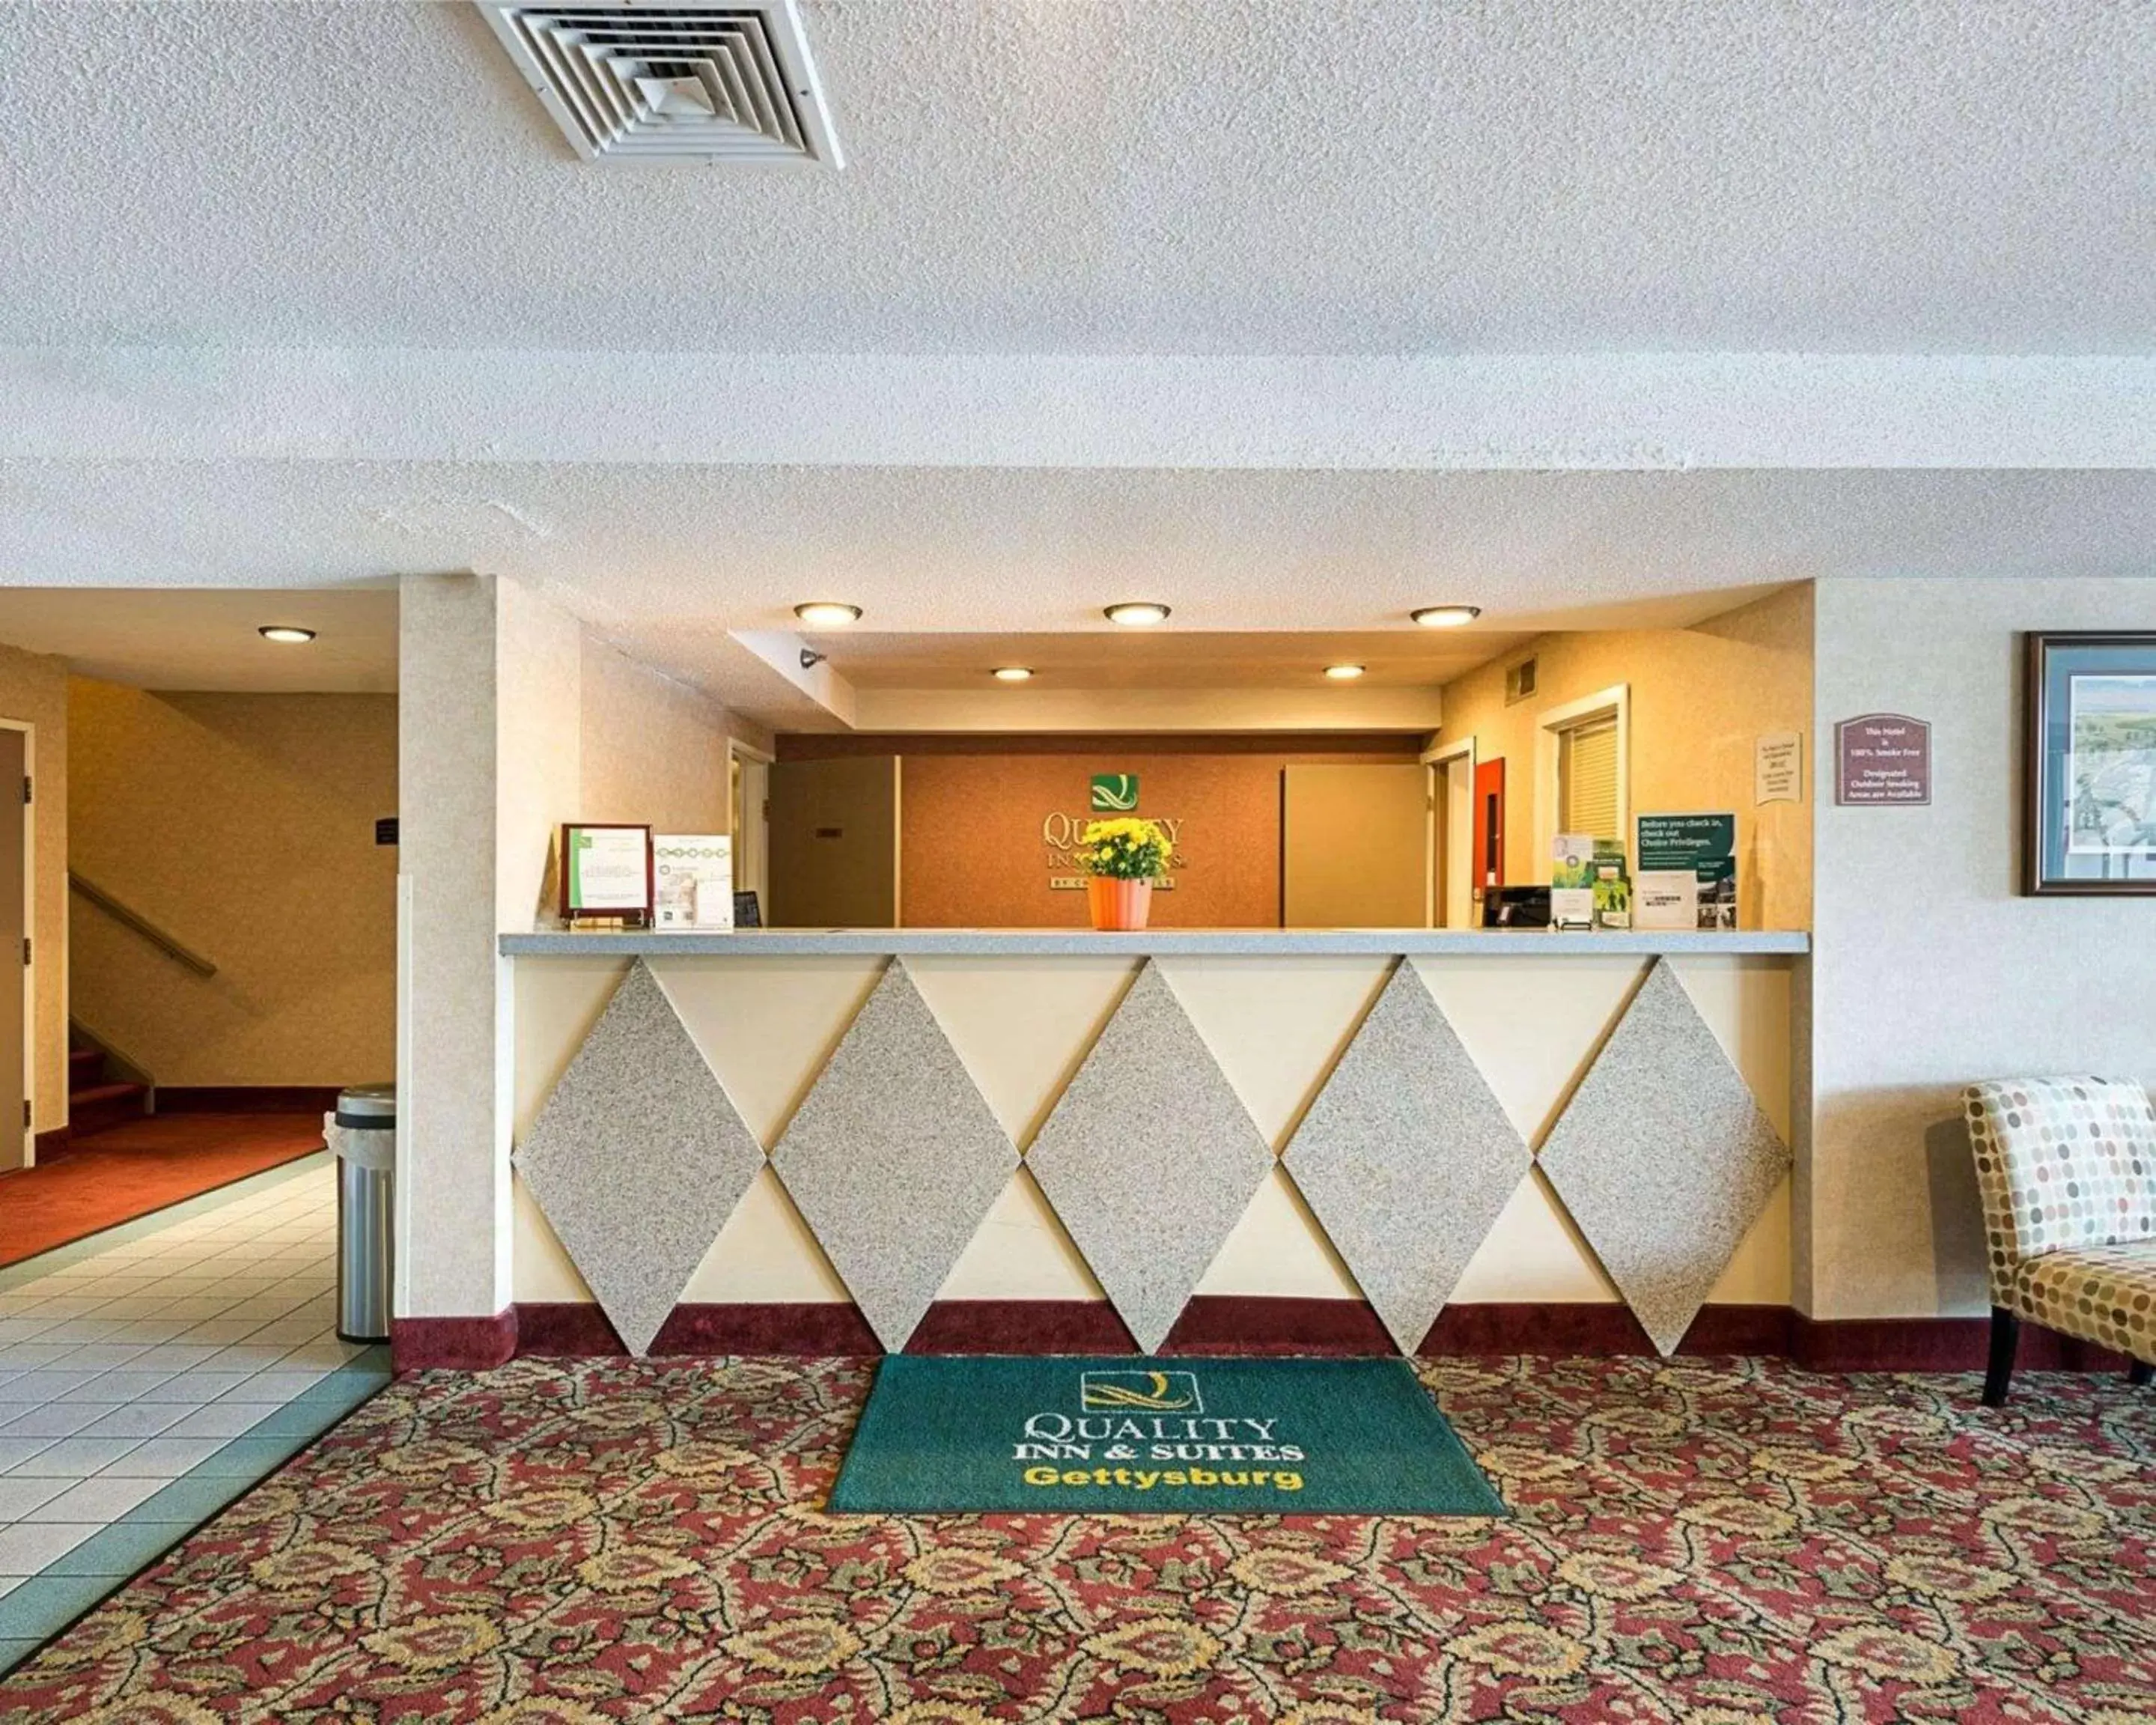 Lobby or reception, Lobby/Reception in Quality Inn & Suites - Gettysburg